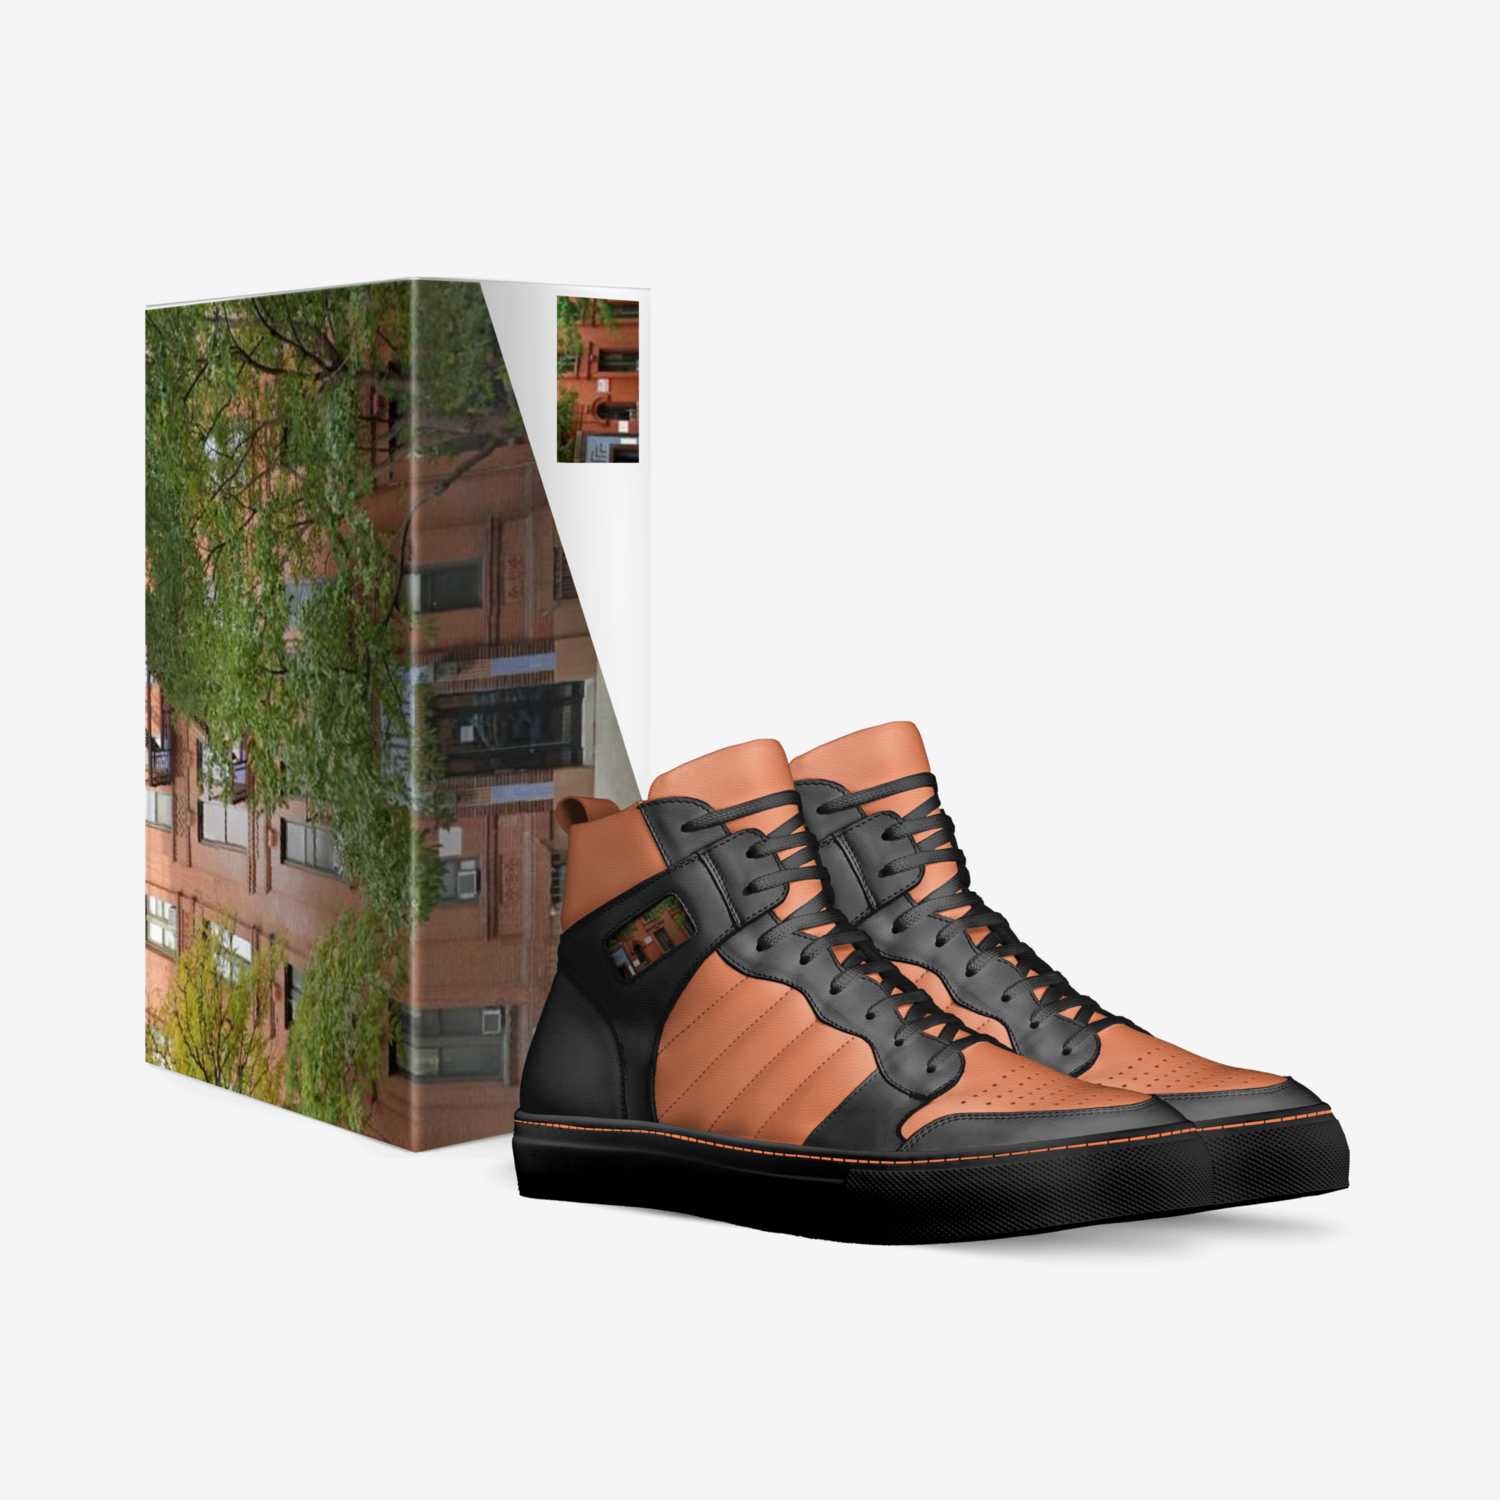 Lennox* & 5'th custom made in Italy shoes by Shawana Davis | Box view